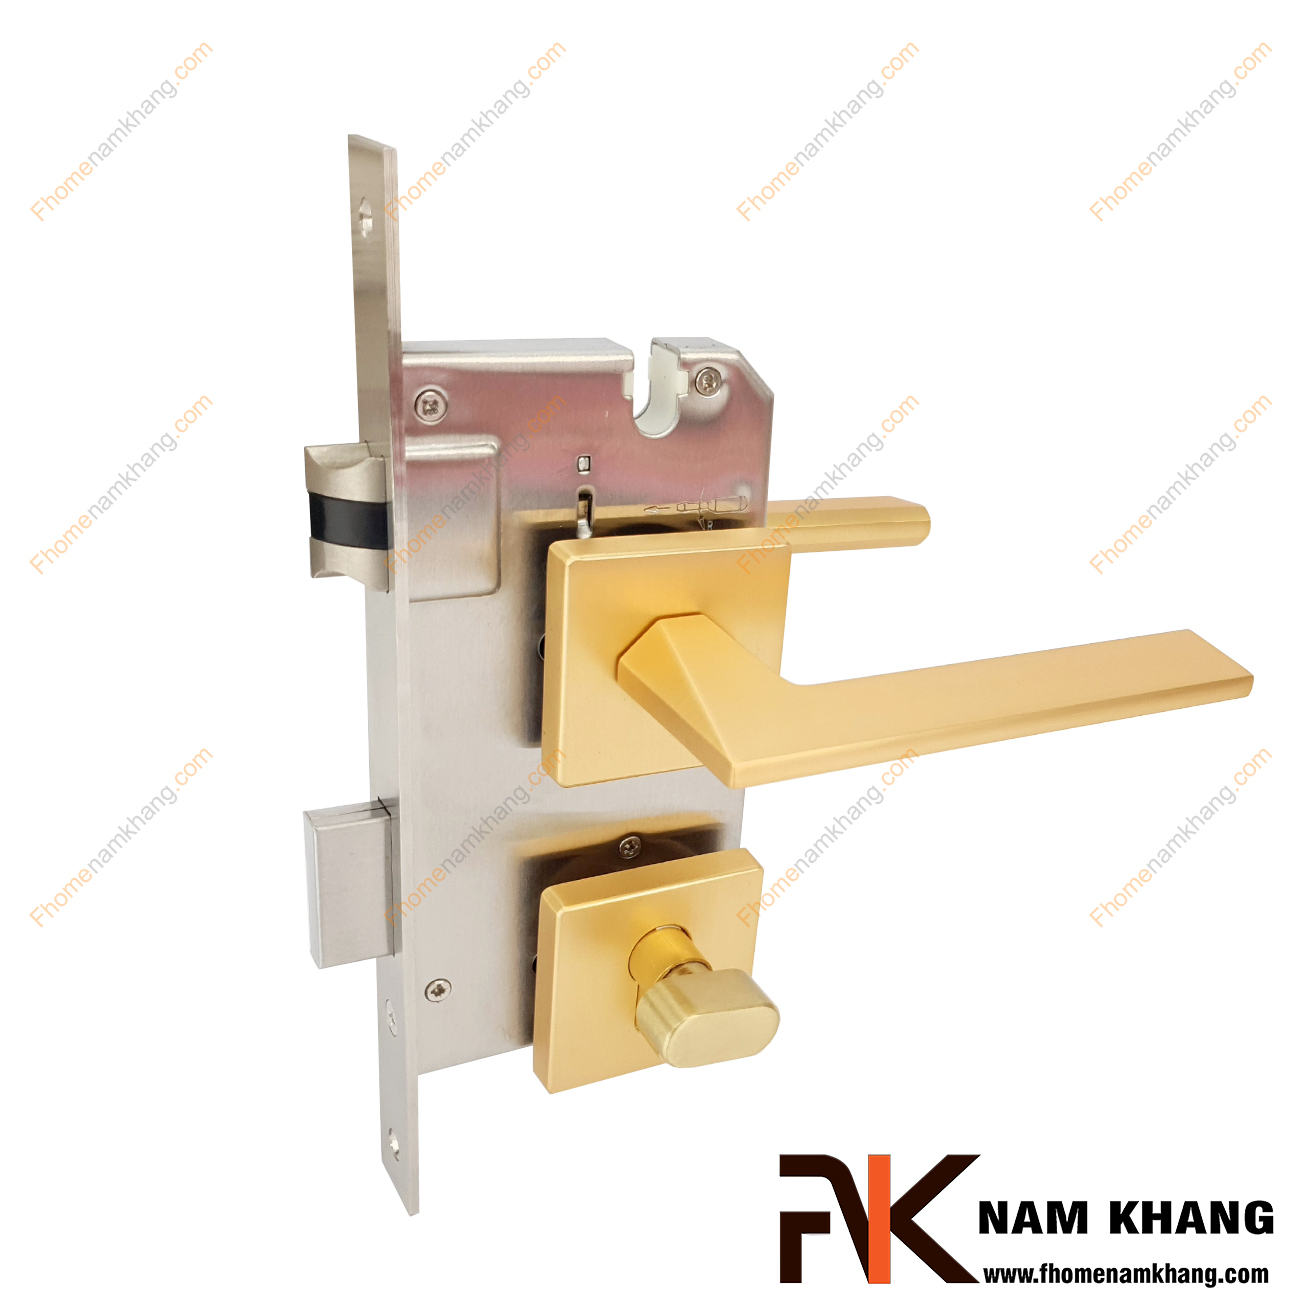 Khóa cửa phân thể chất liệu hợp kim màu vàng mờ NK570V-VM kiểu khóa phân thể đa dạng màu sắc và đặc trưng bởi dòng ốp khóa vuông.